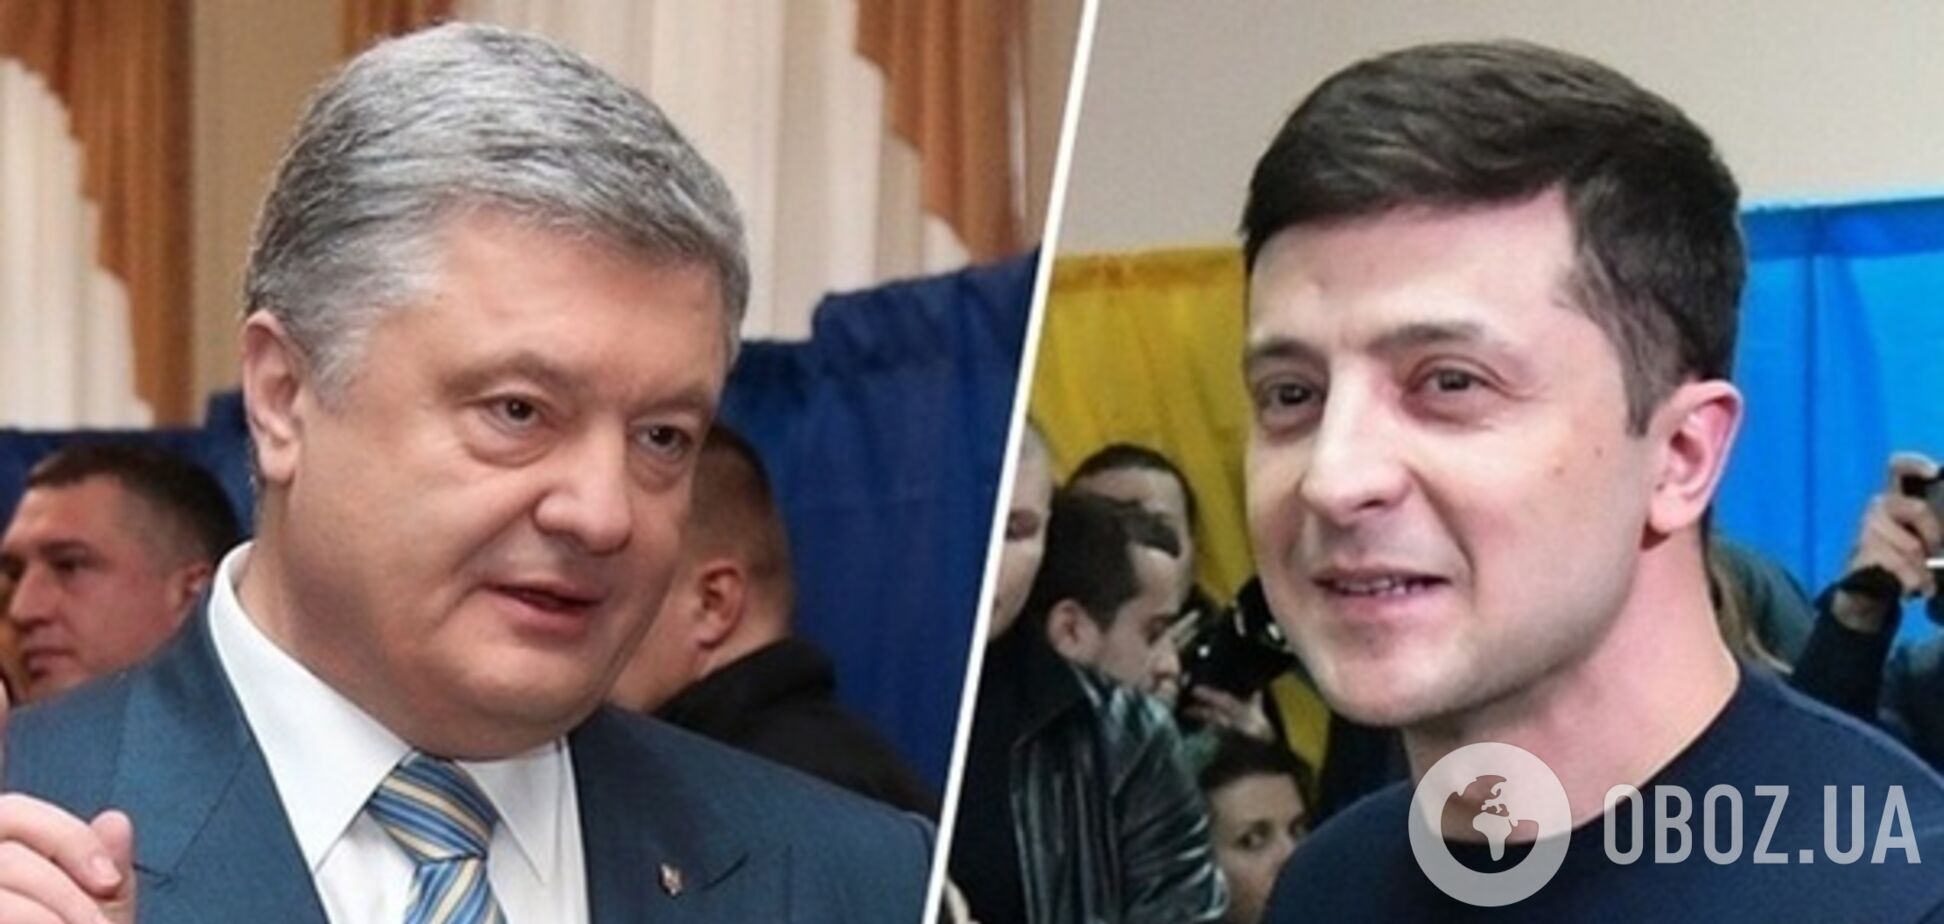 Зеленский vs Порошенко: социолог рассказала, кого выберут украинцы во втором туре